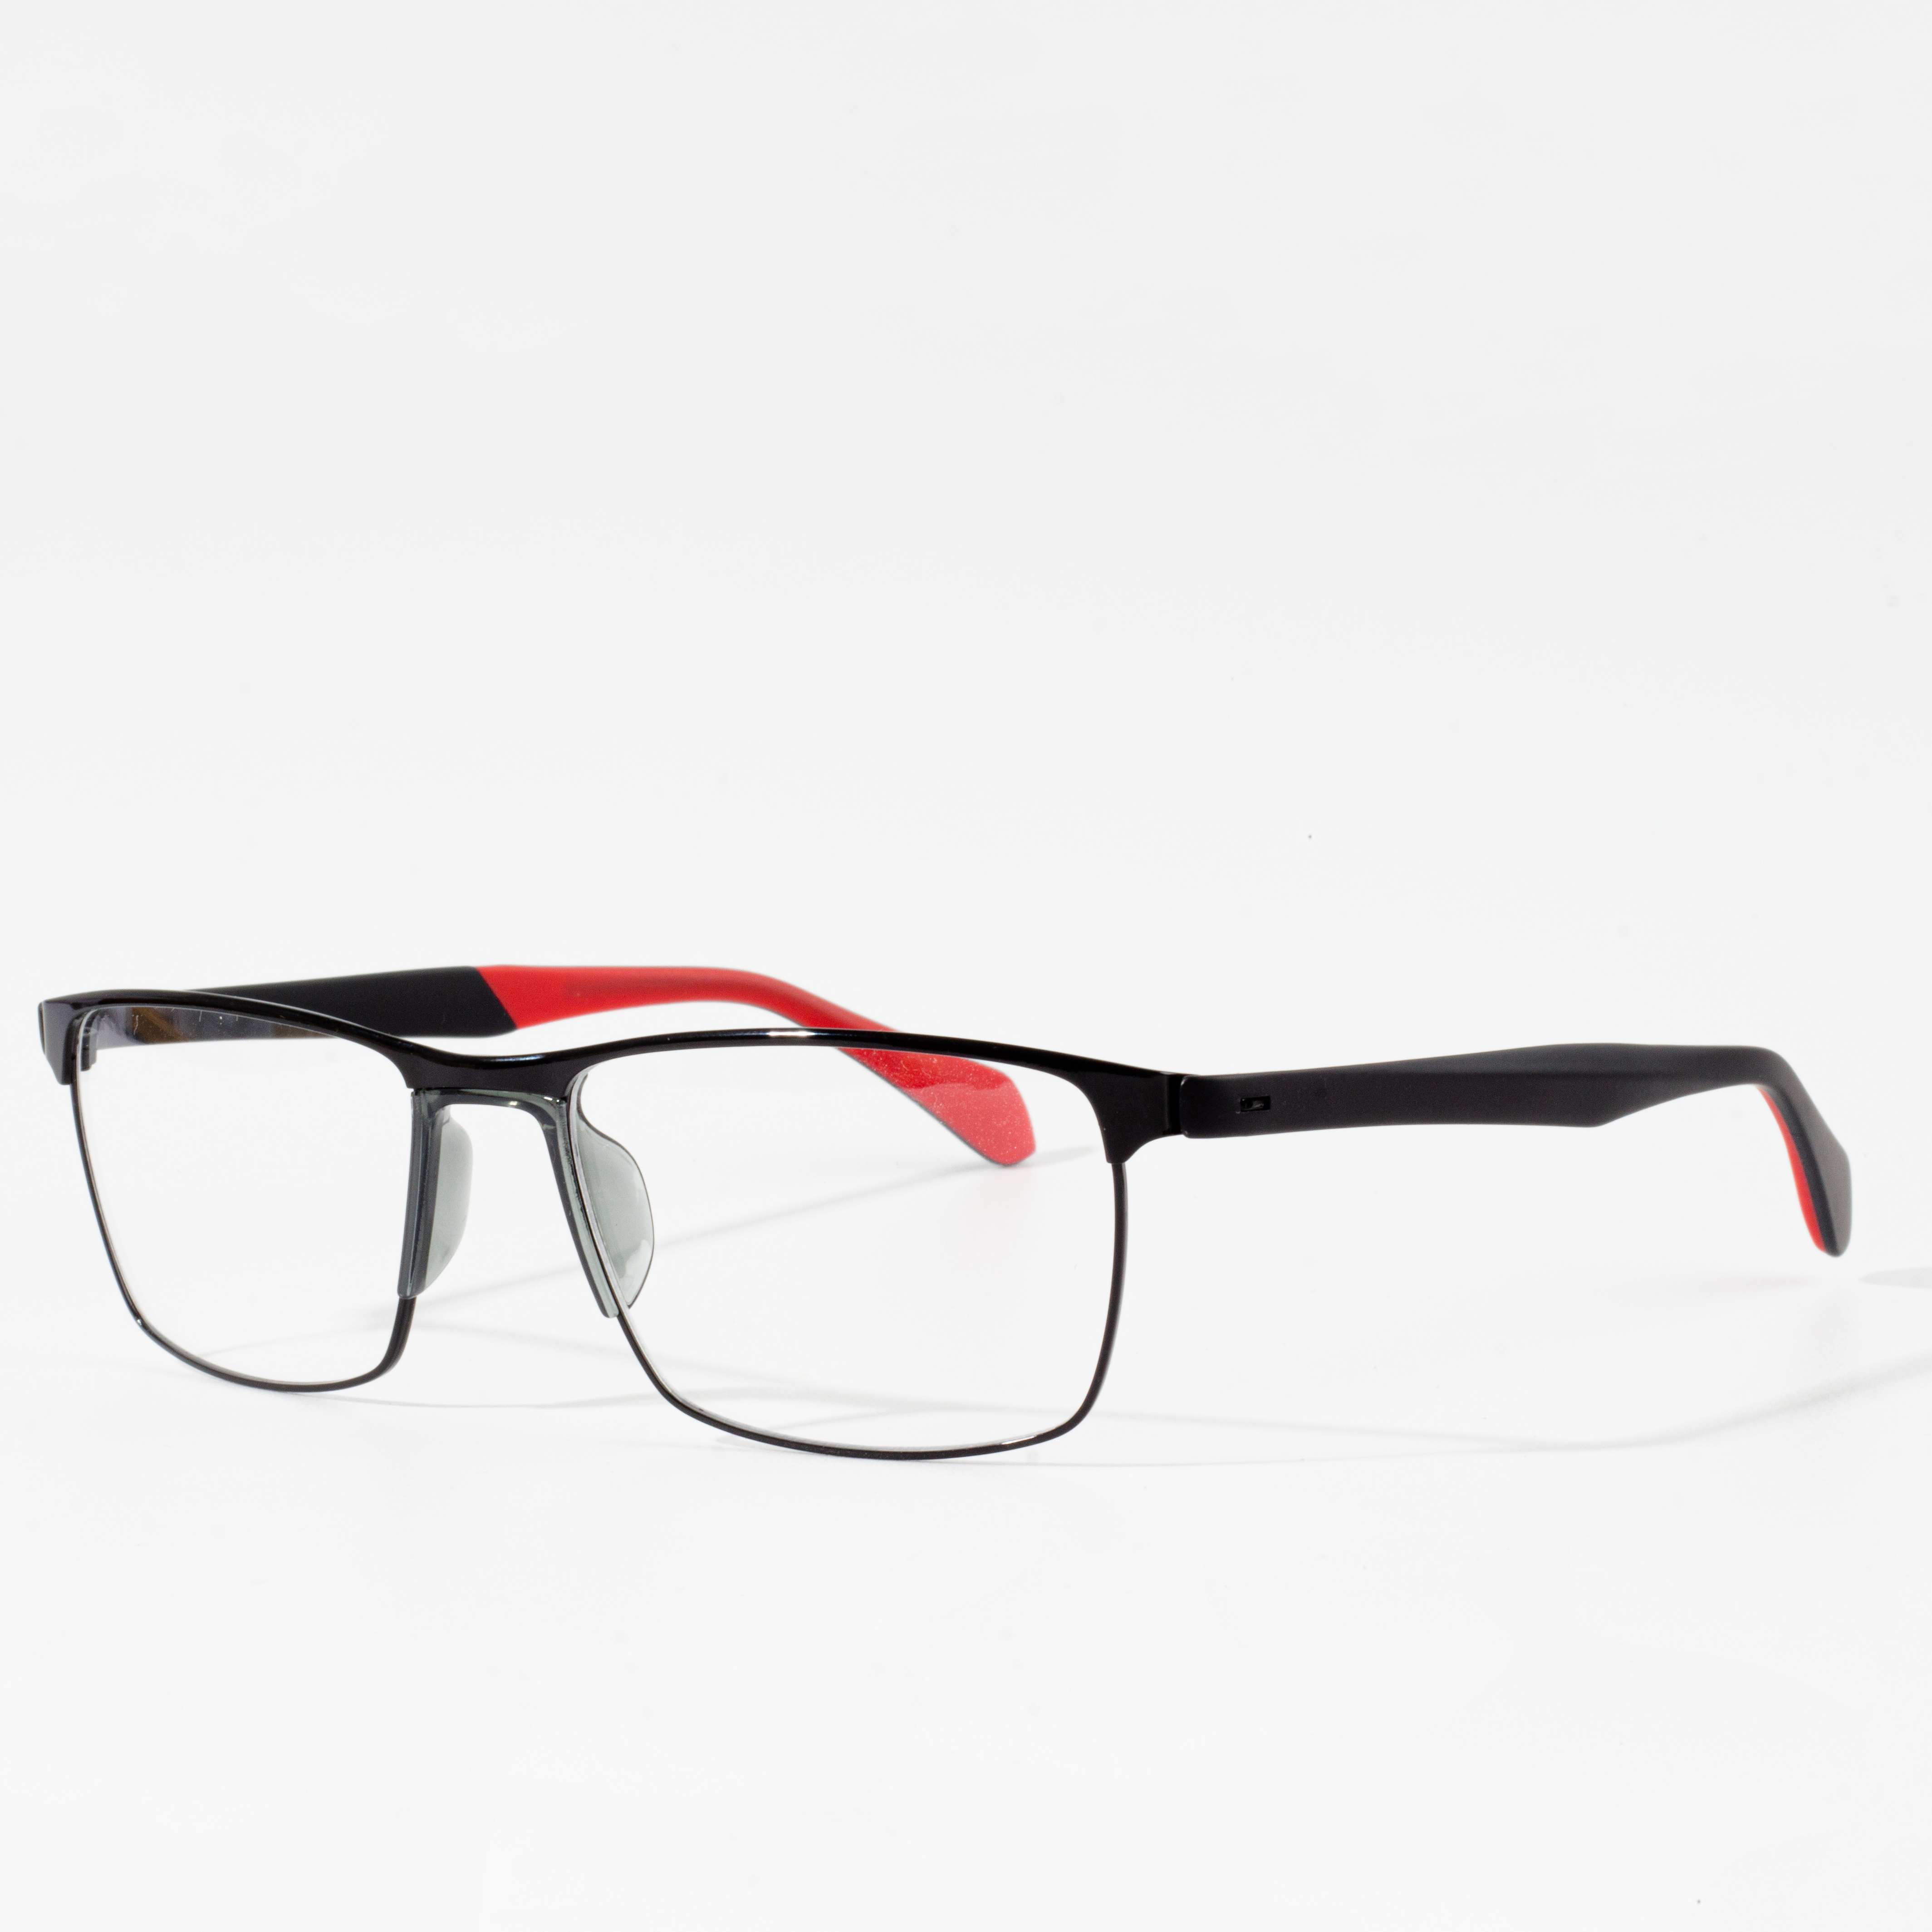 optikai szemüveg tr90 keret